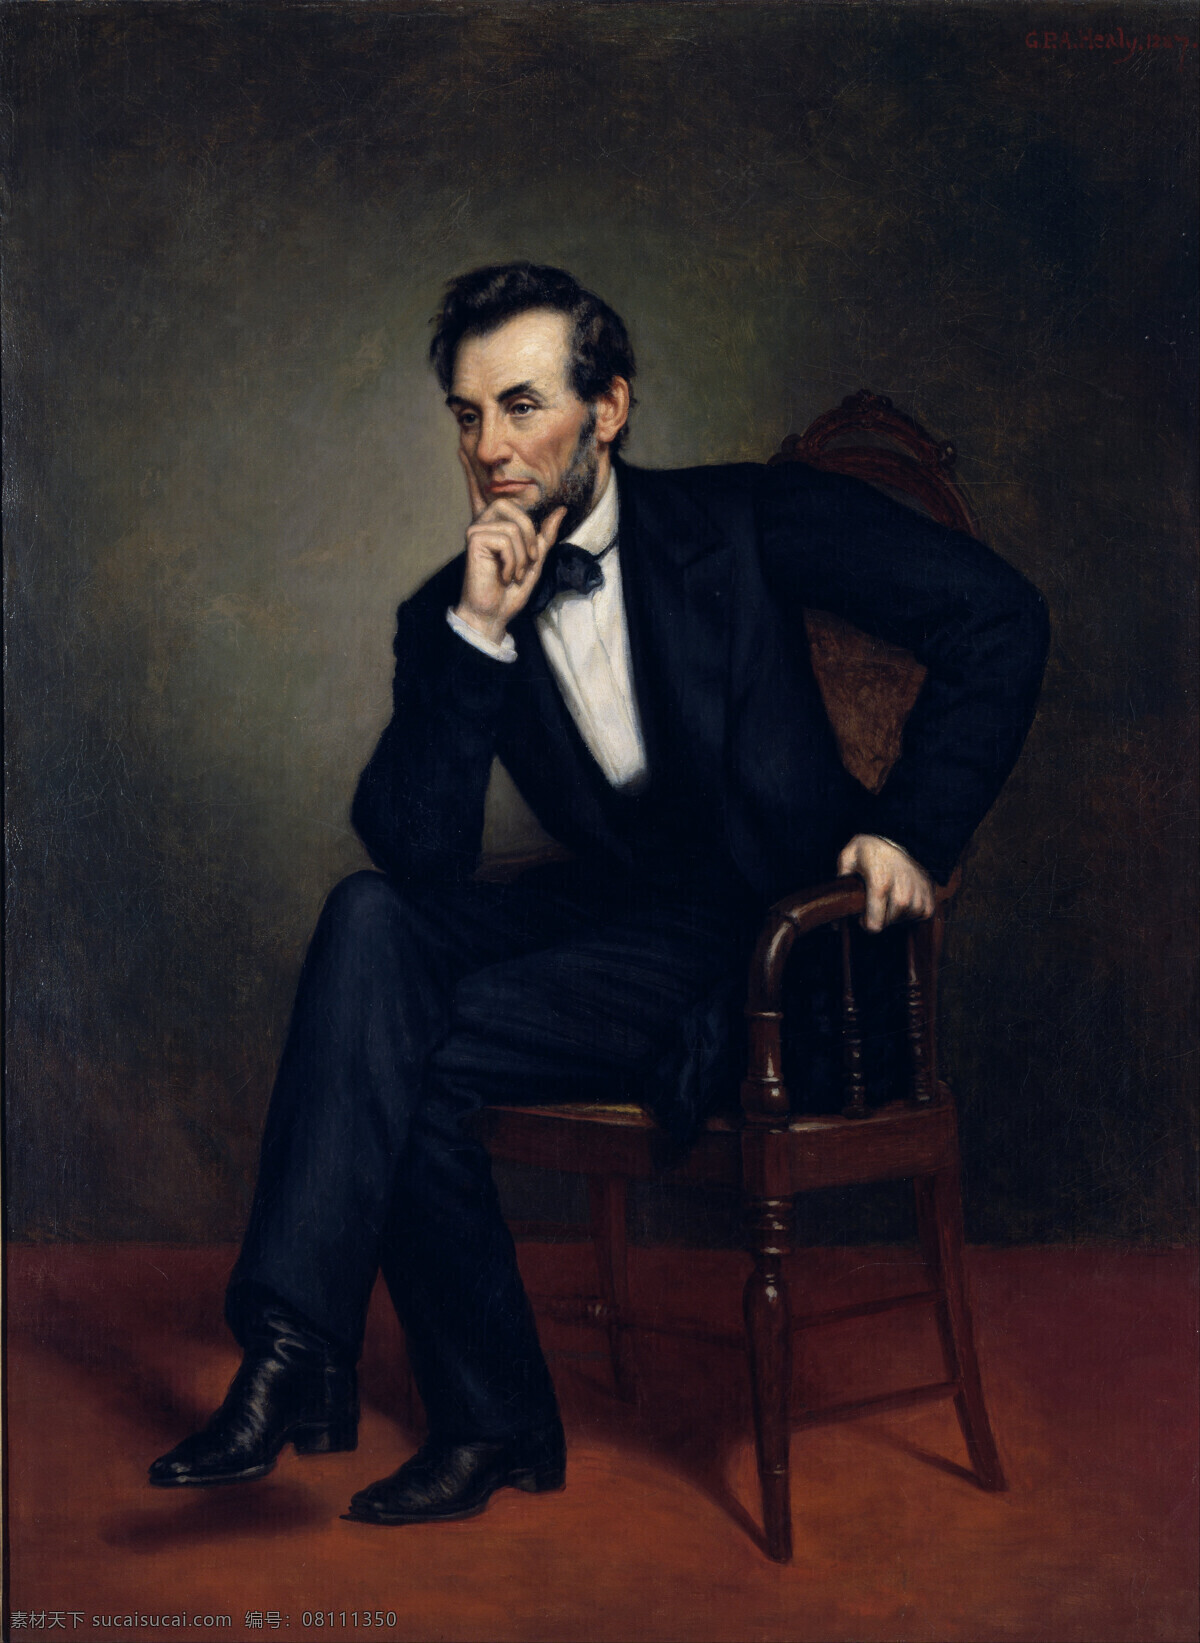 亚伯拉罕 林肯 美国第 任总 统 全身坐像 沉思 解放黑奴令 南北战争 19世纪油画 乔治 皮特 亚历山 大作品 油画 绘画书法 文化艺术